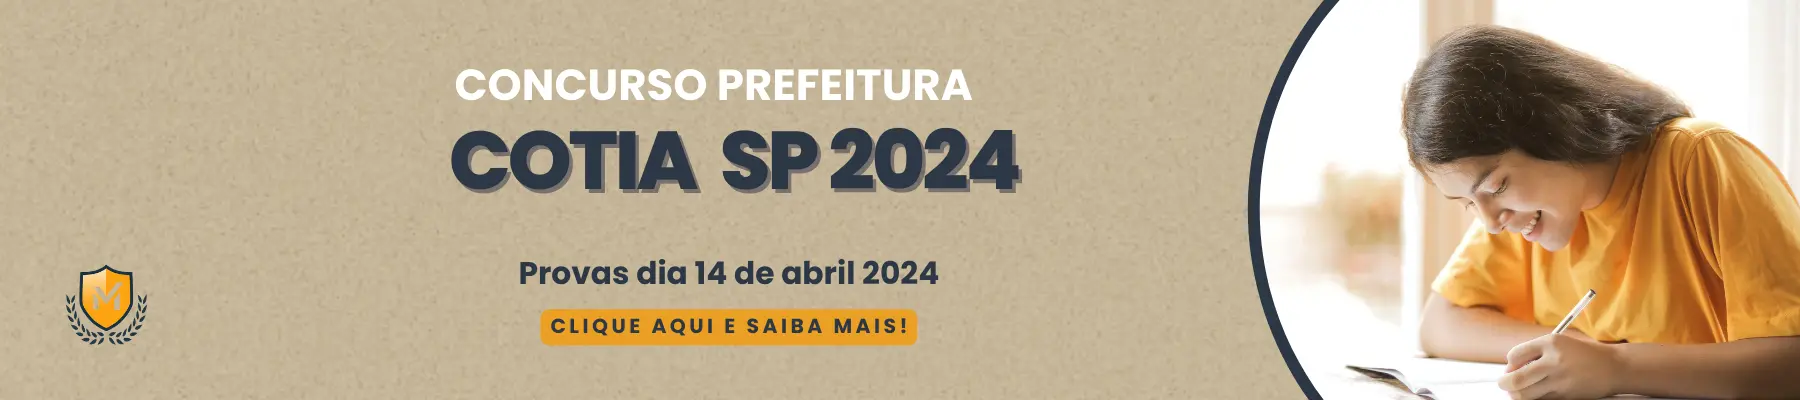 Prefeitura de Cotia SP 2024